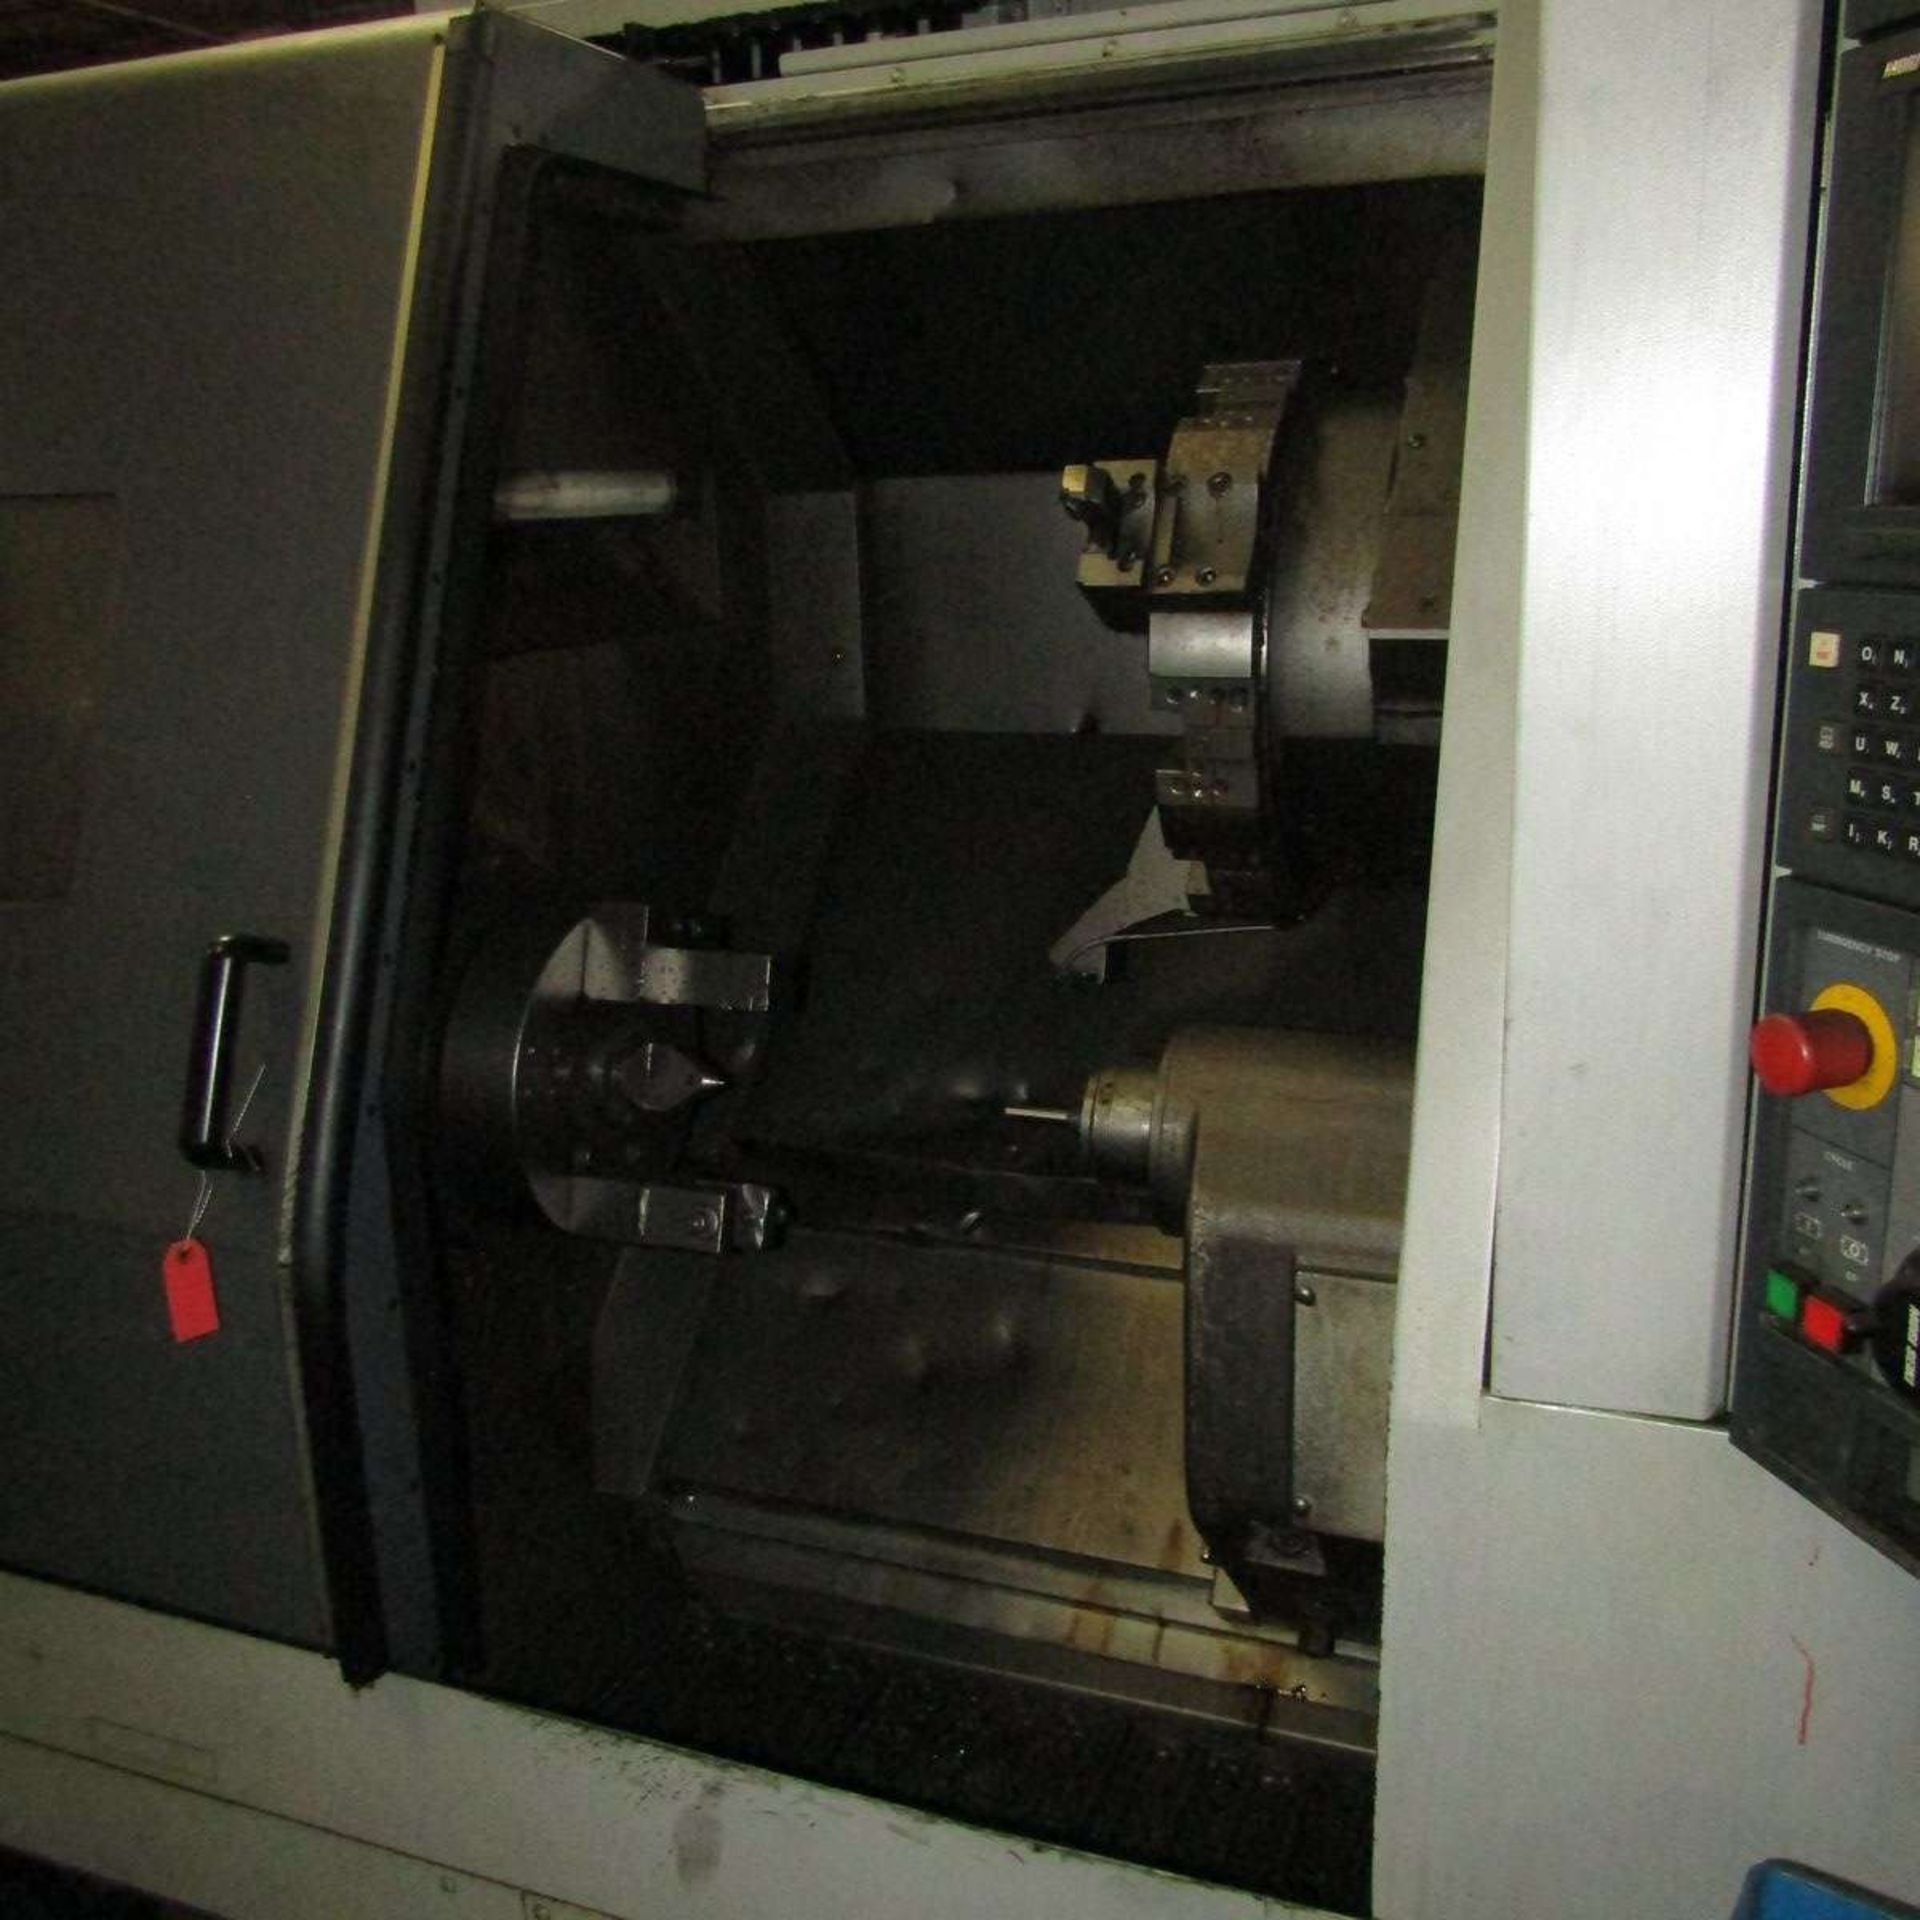 Mori Seiki SL-303B/700 CNC Turning Center - Image 2 of 5